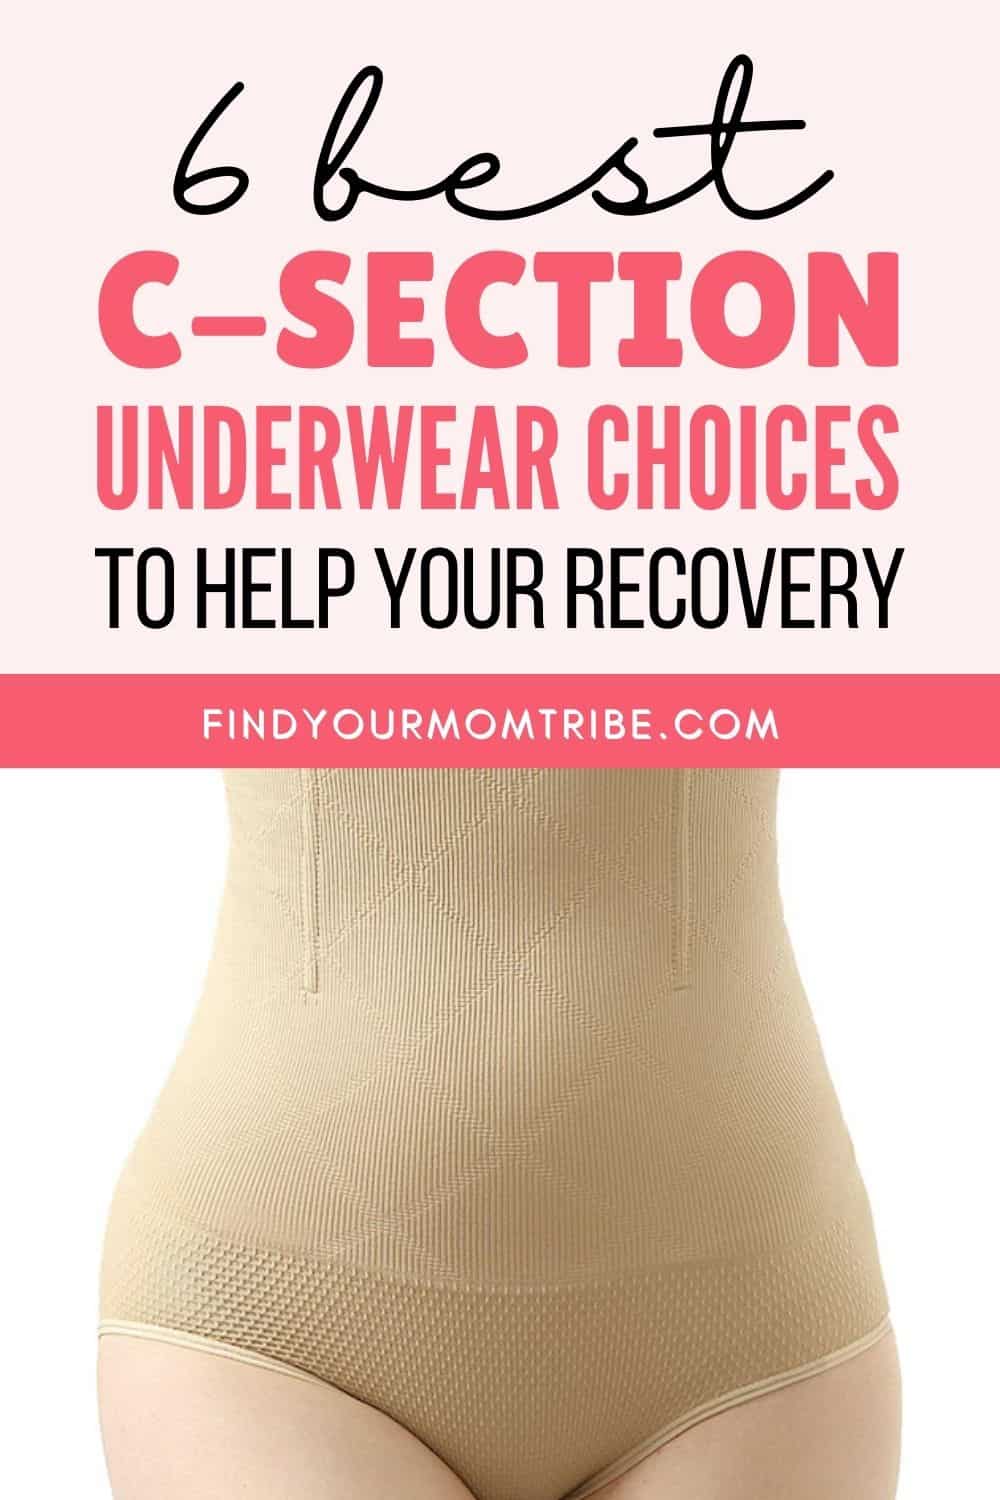 6 Best C-Section Underwear Choices Pinterest